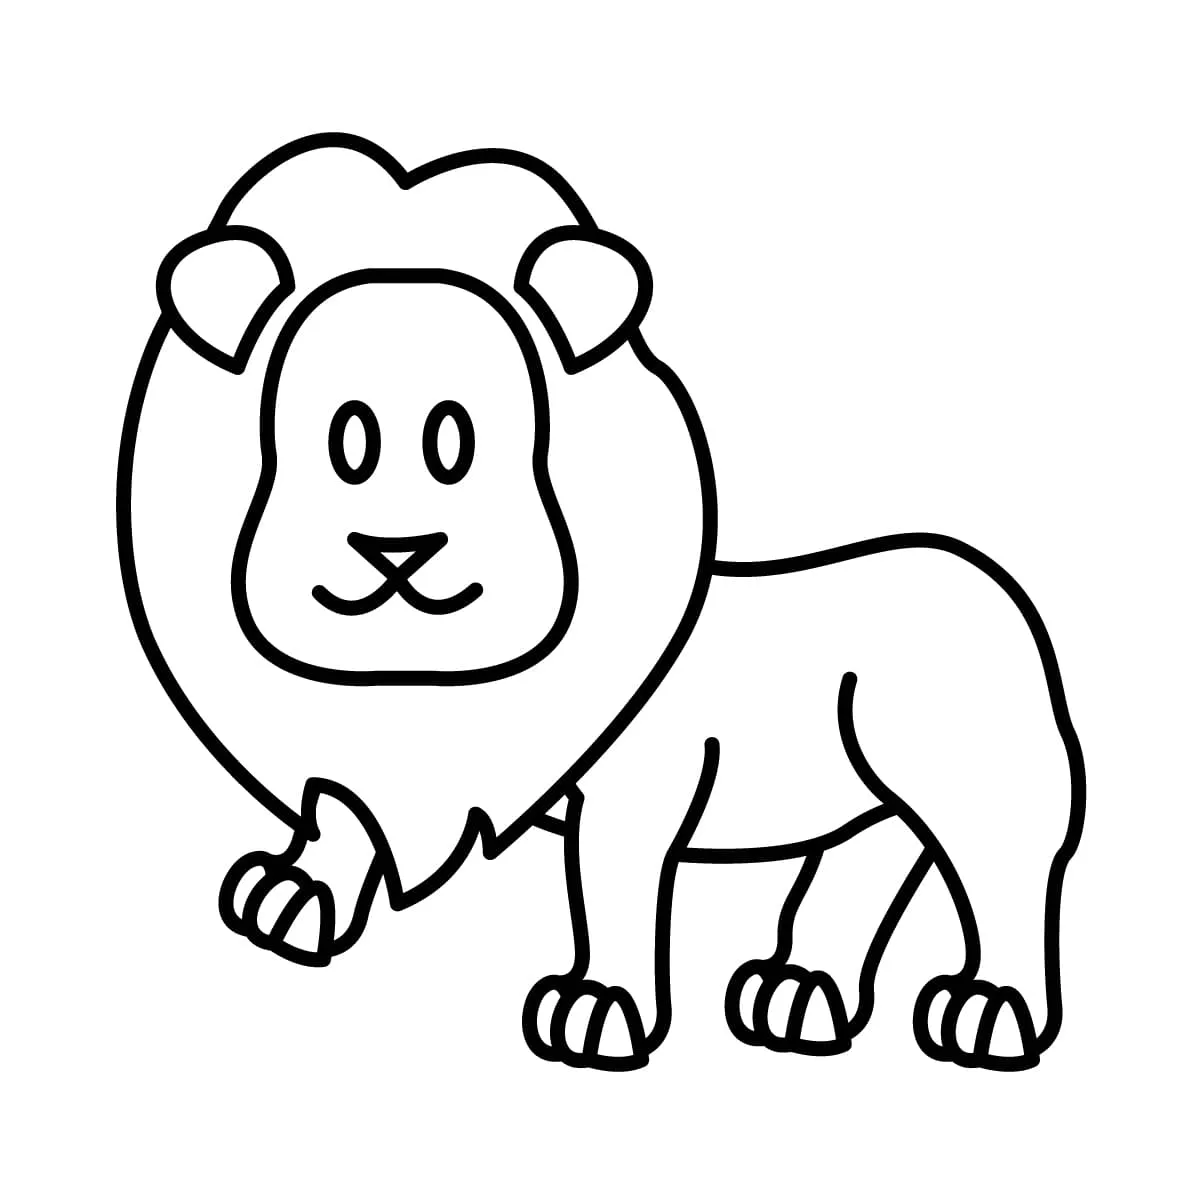 Dibujo de león para colorear e imprimir - Dibujos y colores